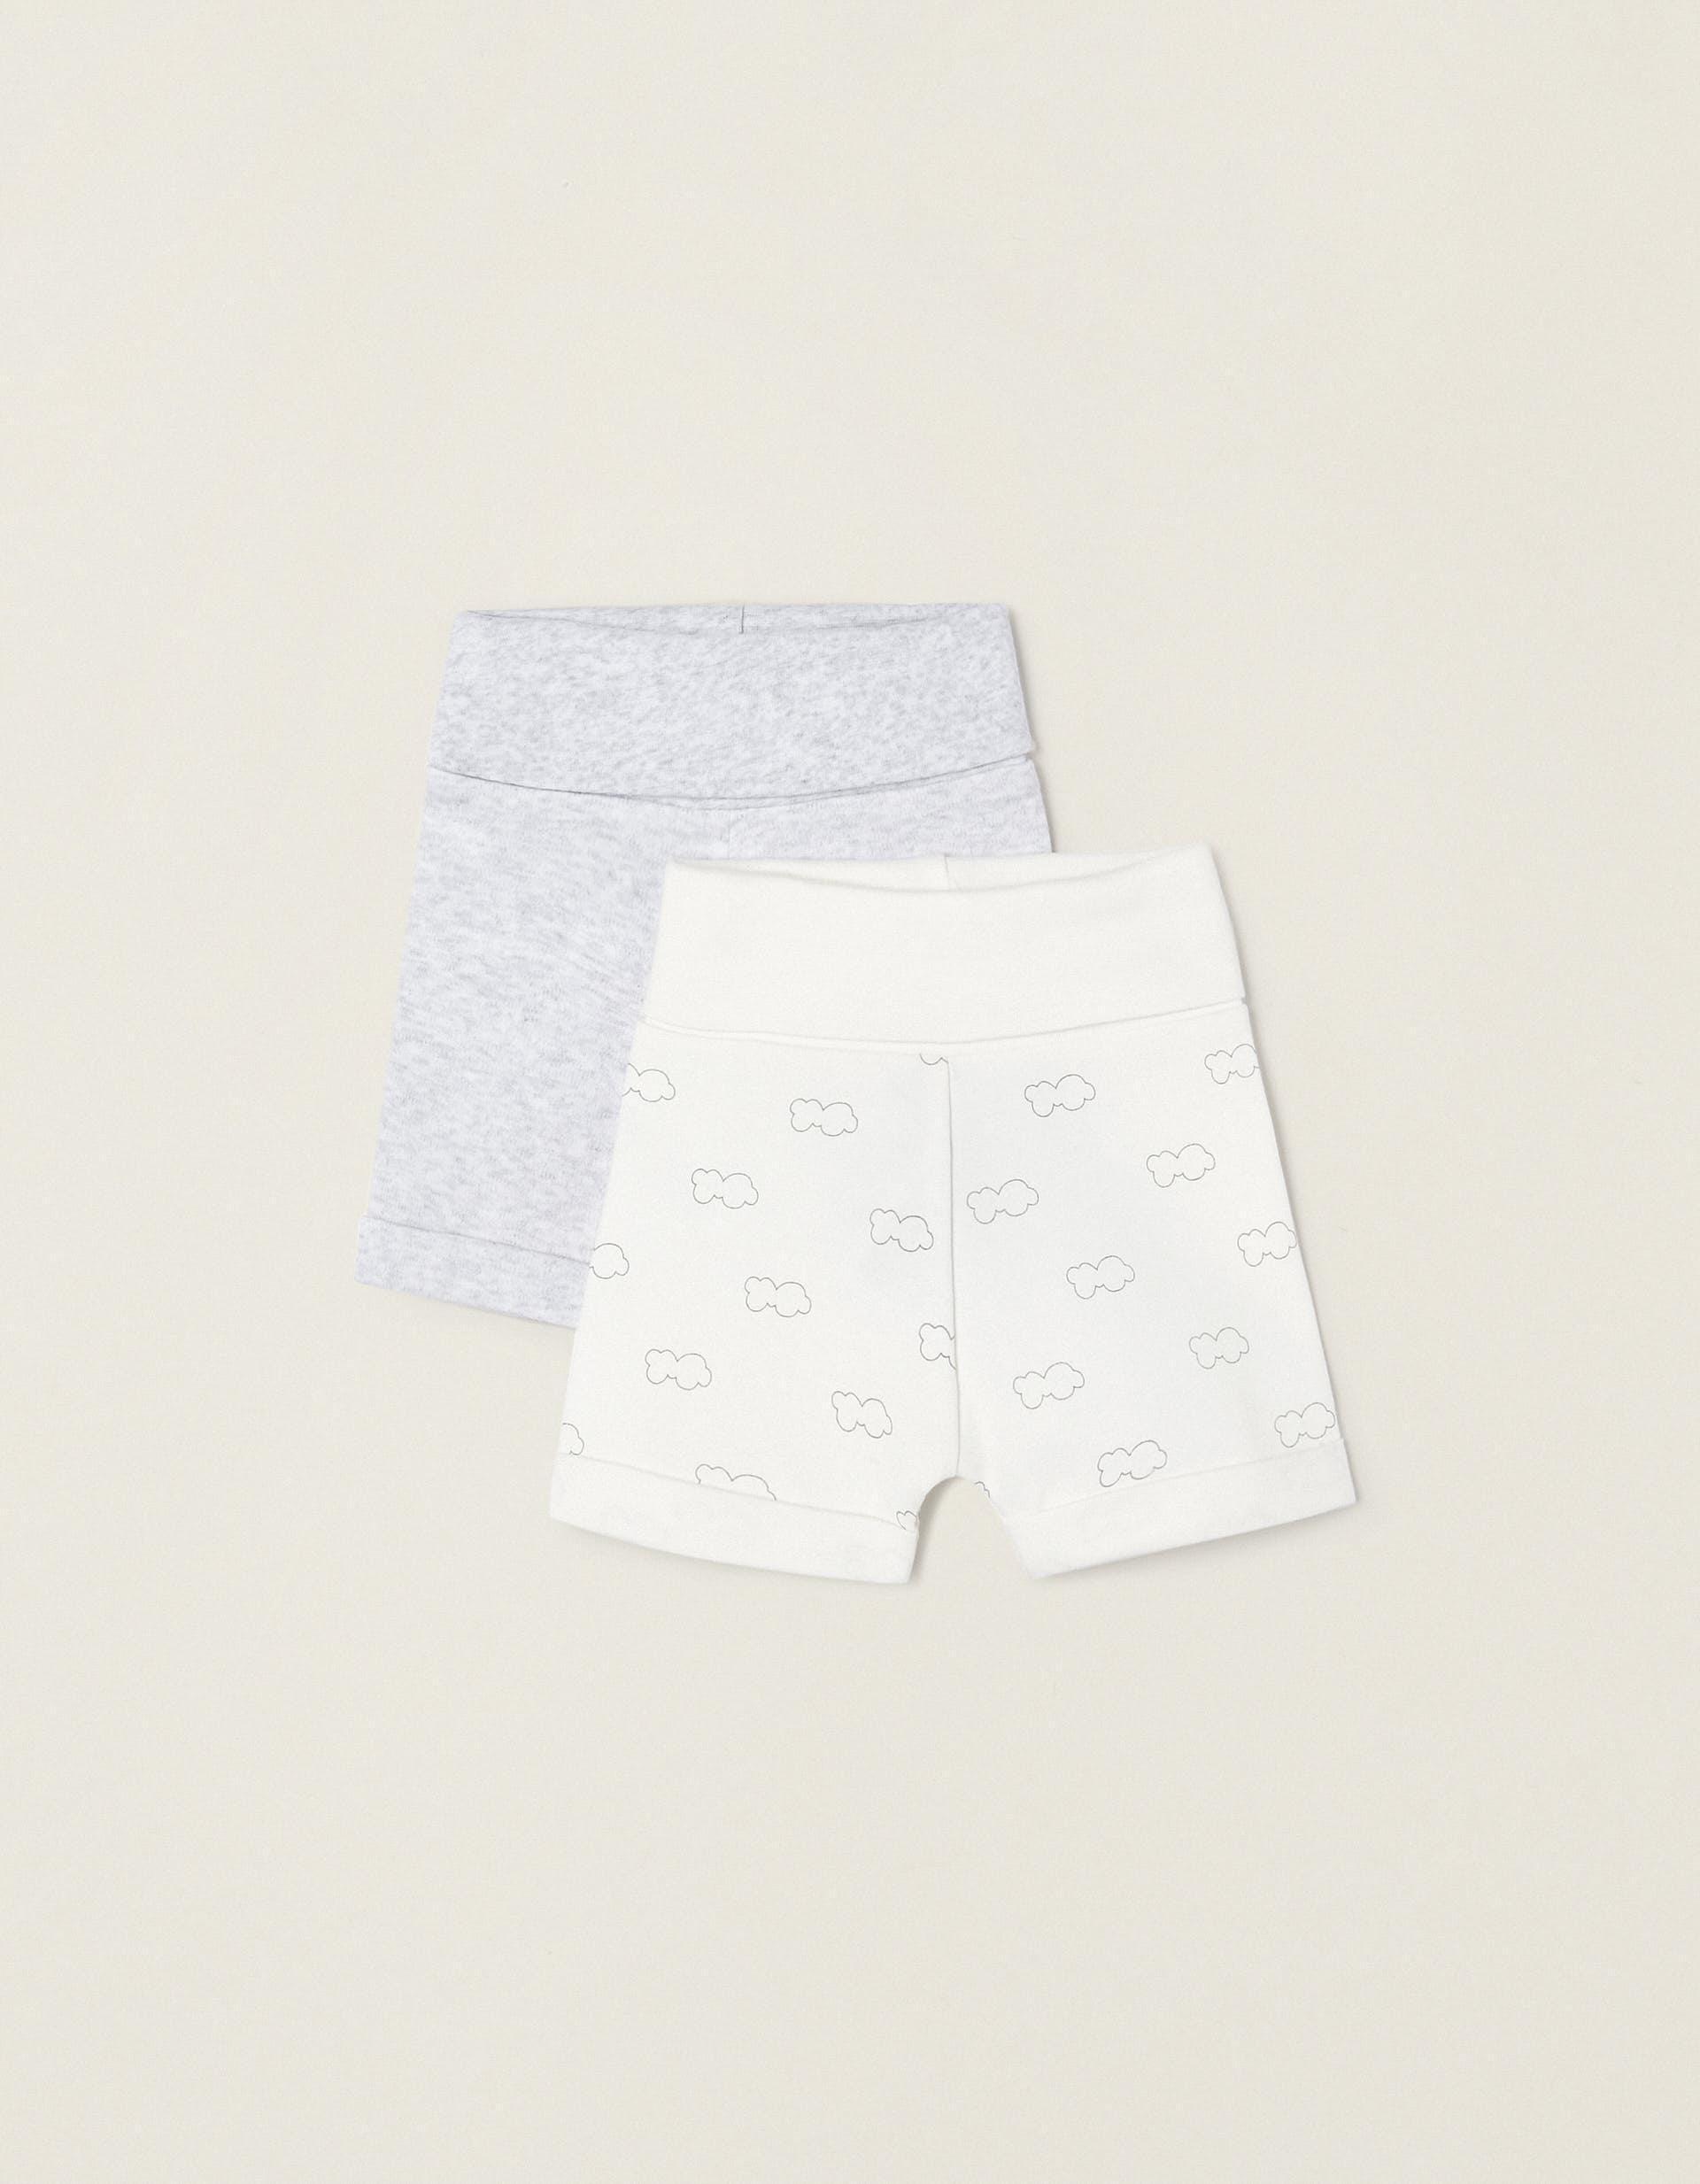 Zippy - Grey Cotton Shorts - Set Of 2, Baby Unisex